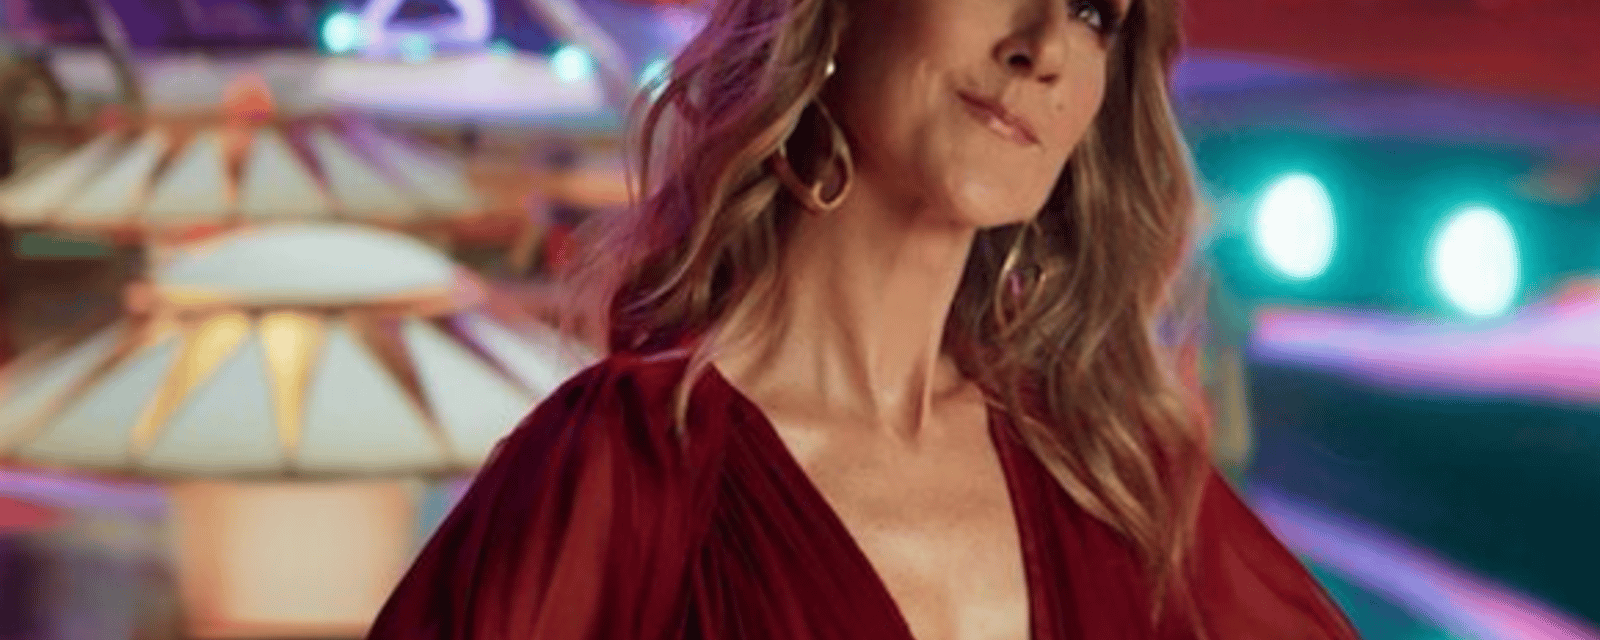 La soeur de Céline Dion donne des nouvelles de sa santé : « Son corps a dit stop »